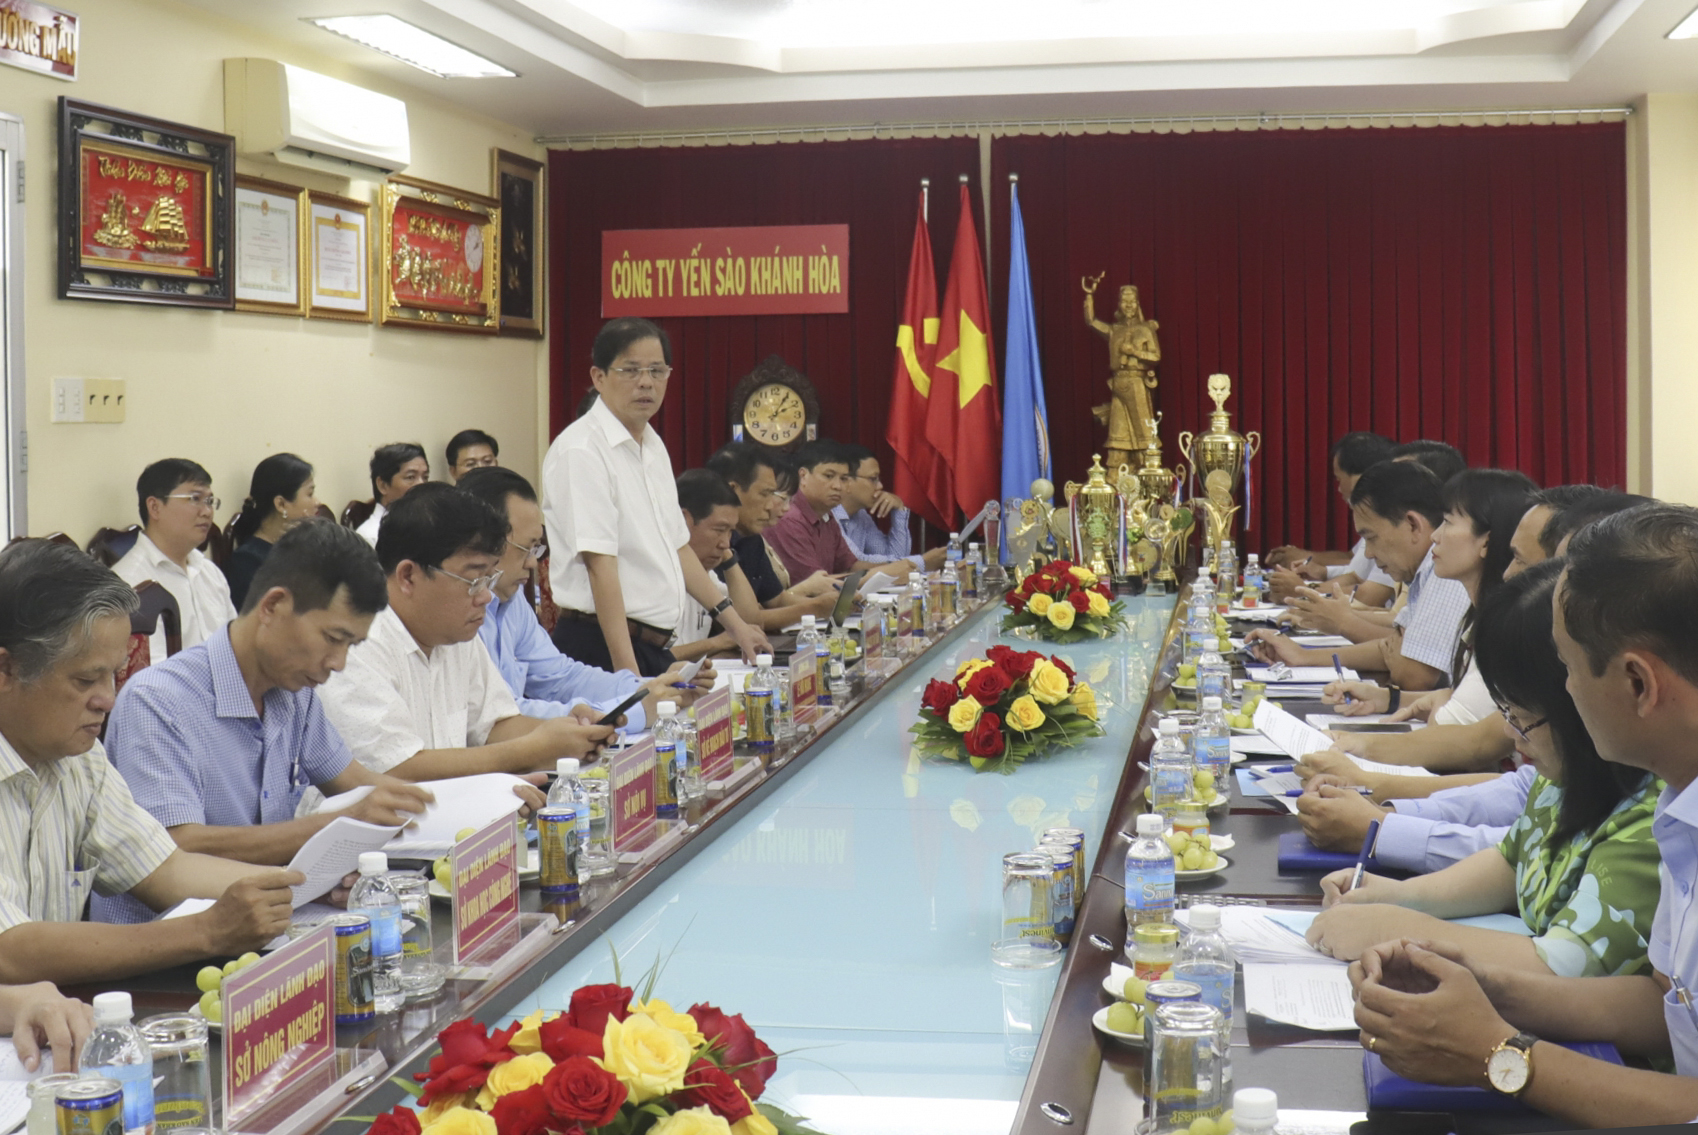 Chủ tịch UBND tỉnh Nguyễn Tấn Tuân làm việc với Công ty Yến sào Khánh Hòa